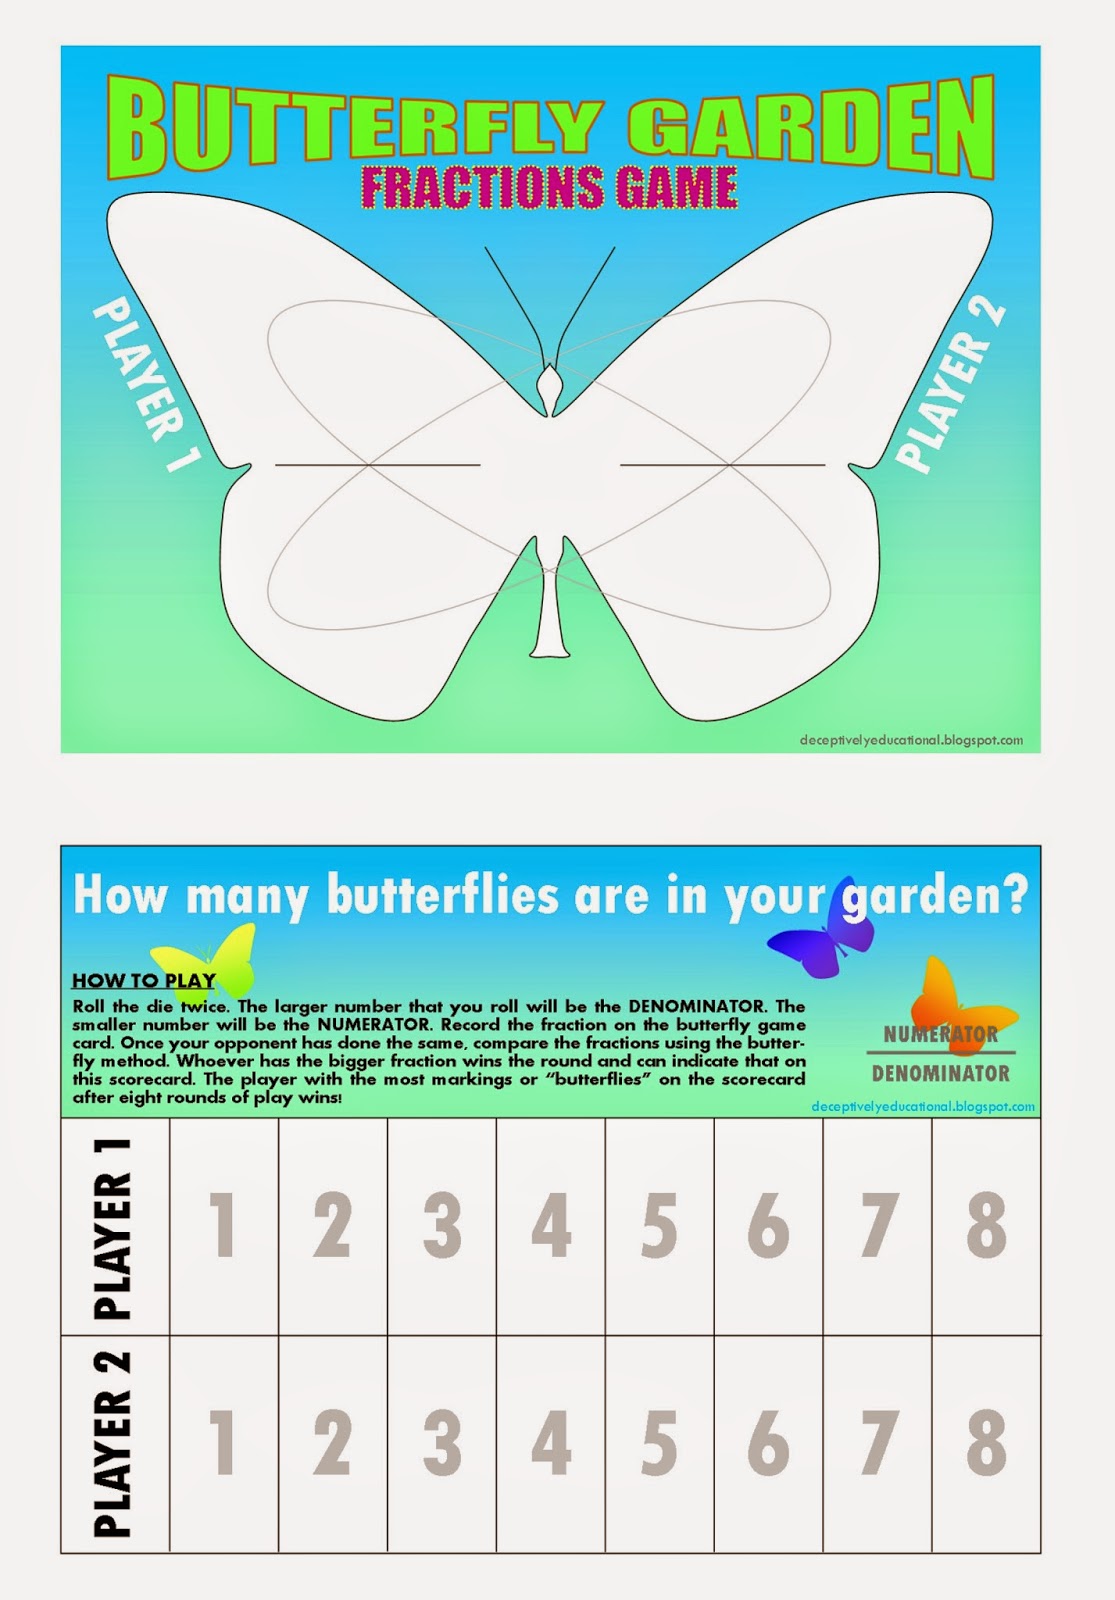 http://3.bp.blogspot.com/-jTV9A6lTWPc/VRTG1XMHCRI/AAAAAAAAH0E/q2GbBljvRDA/s1600/Butterfly%2BGardent_Download%2BSnapshot.jpg